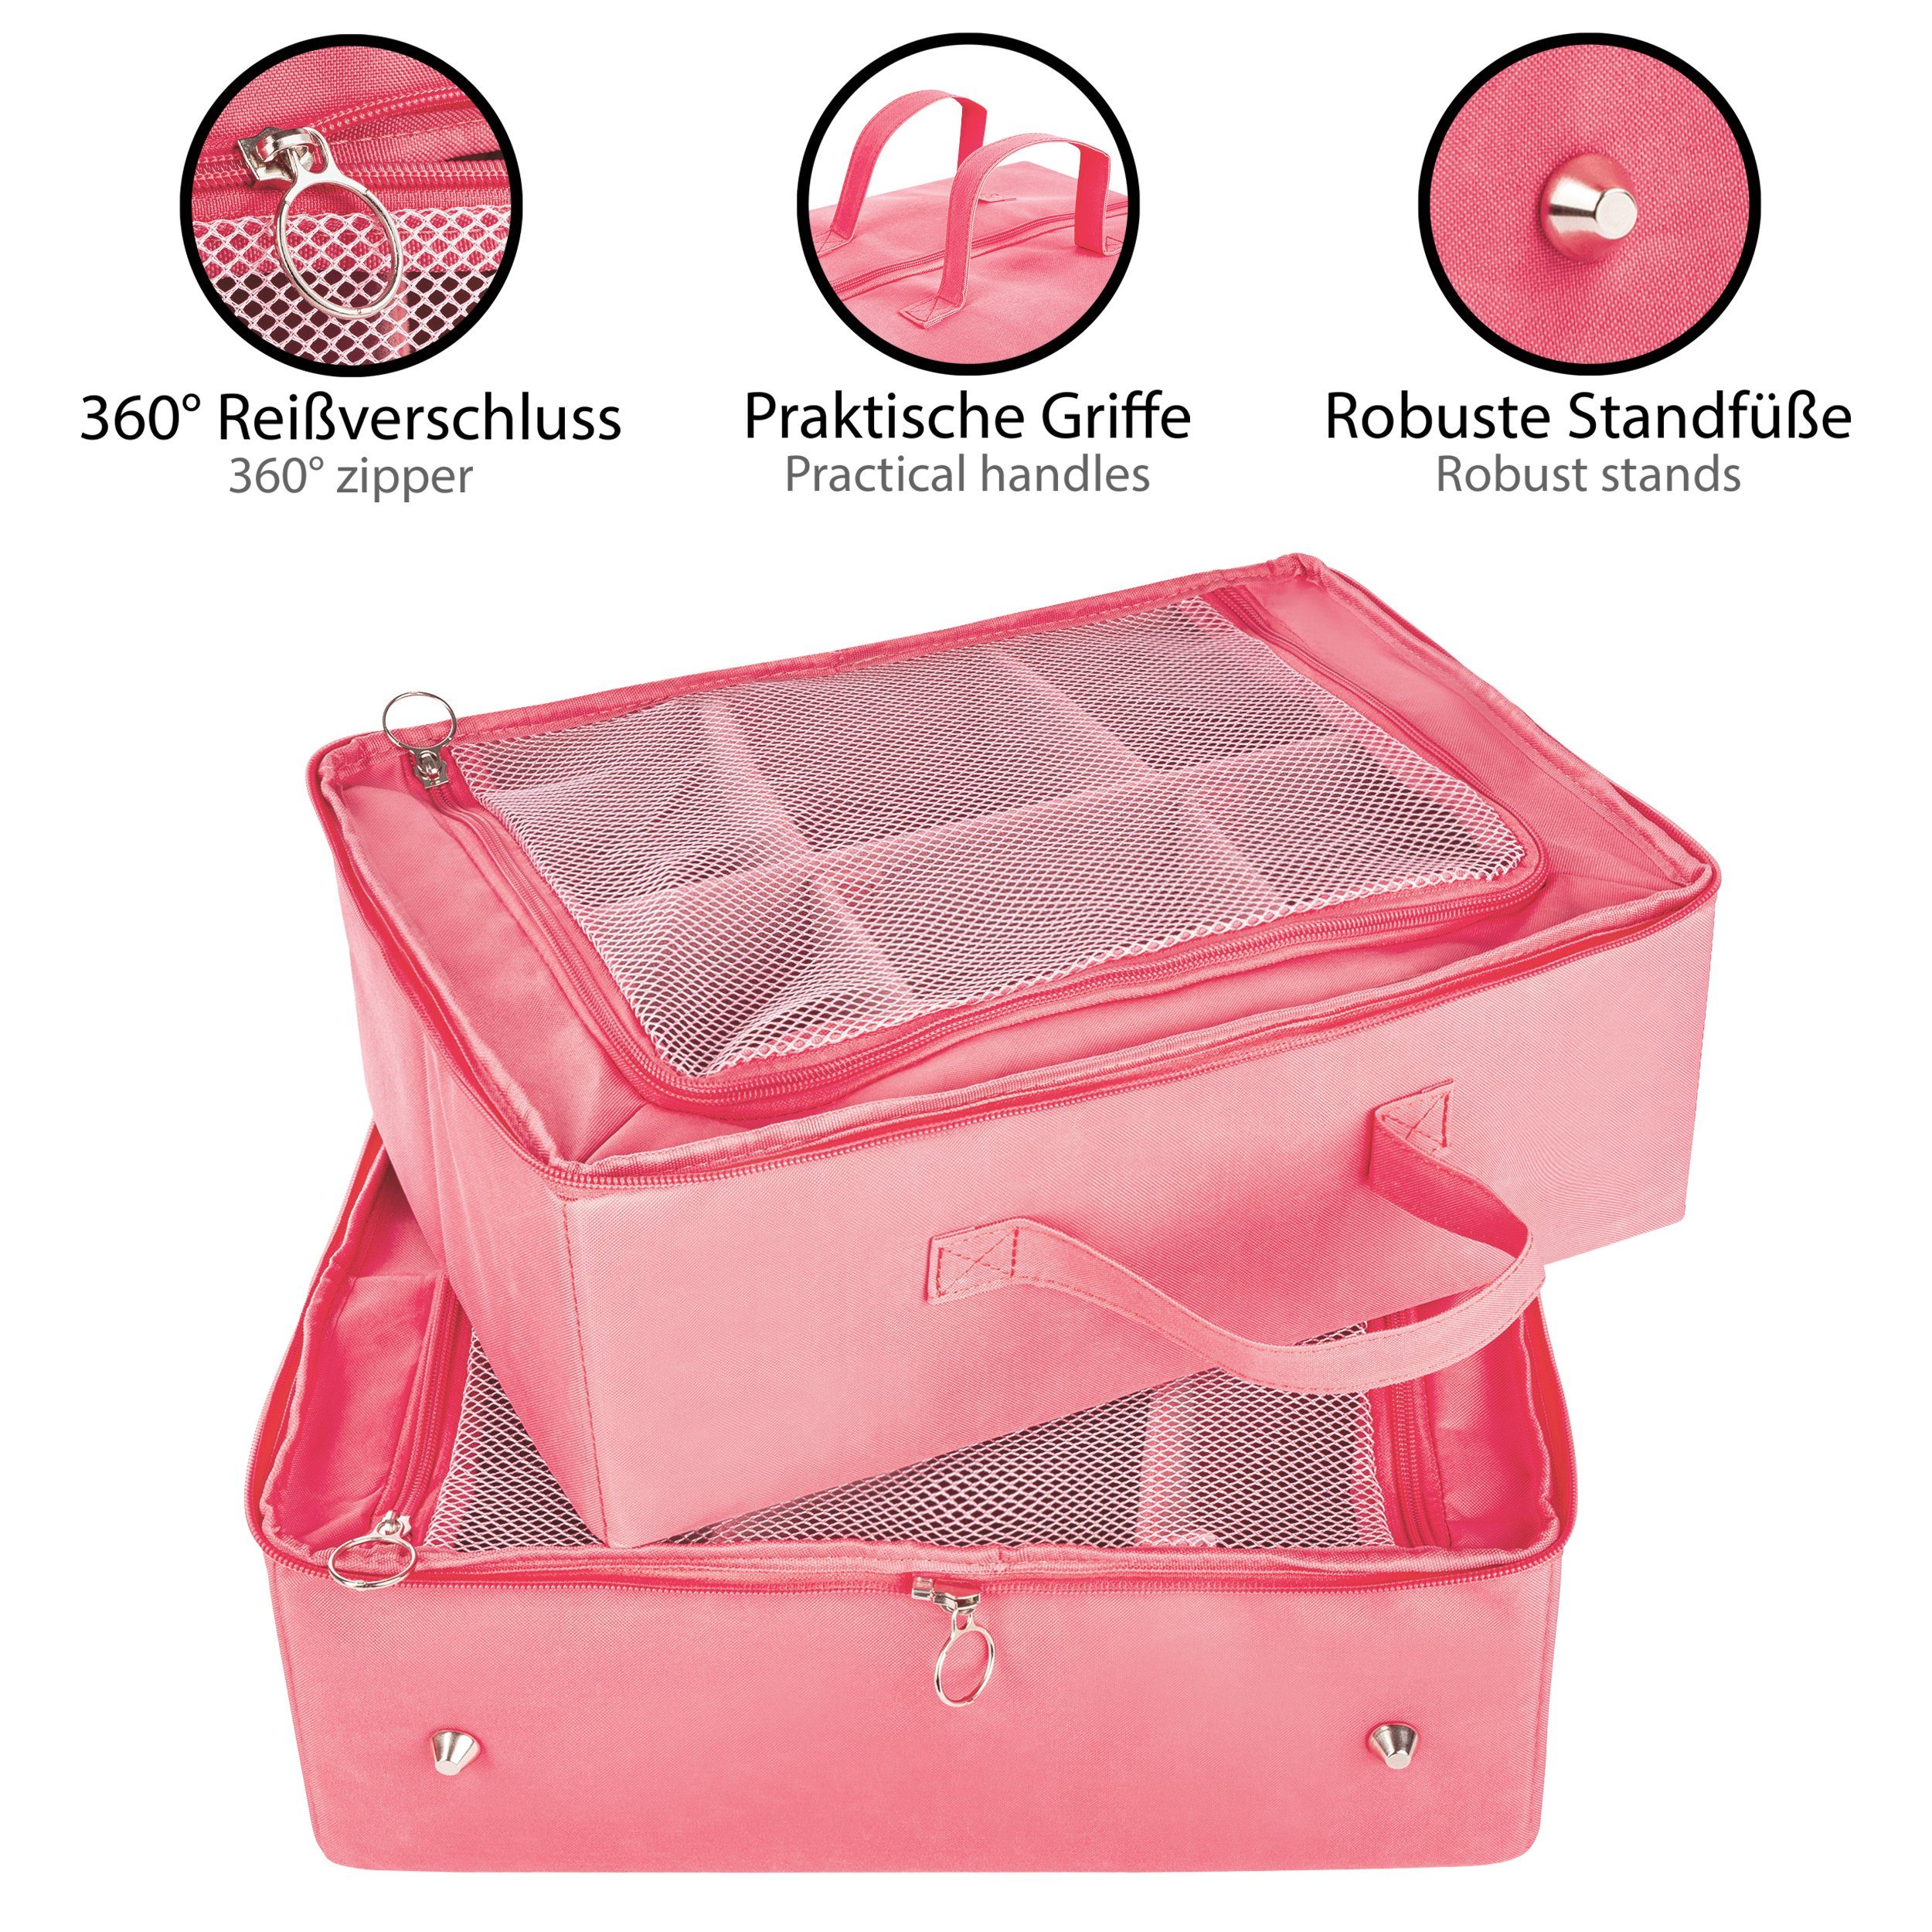 Aufbewahrungsbox, ONVAYA Multifunktions-Organizer, Aufbewahrungstasche rosa,klein Organizer